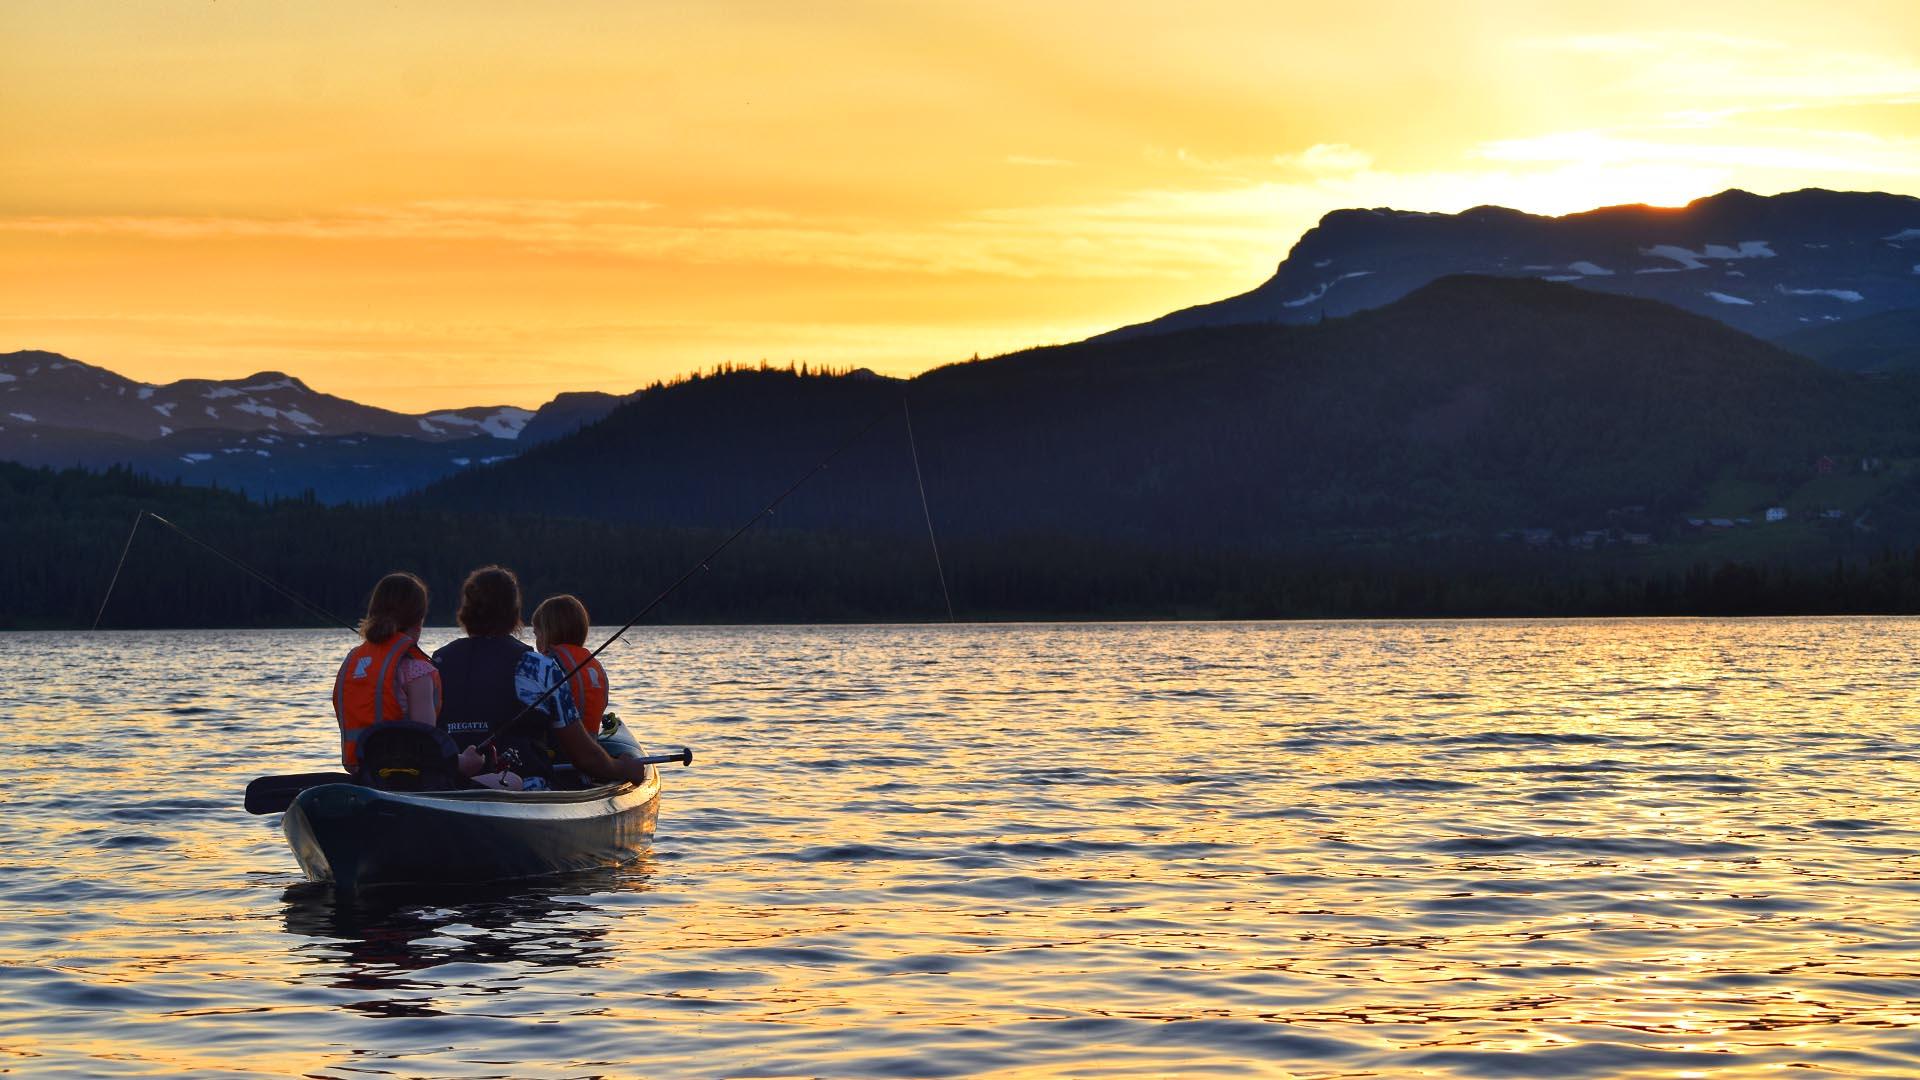 Ein Kanu mit drei Personen, die angeln. Die hinter einem Berg untergehende Sonne färbt die Wasseroberfläche und den Himmel leuchtend gelb-orange.